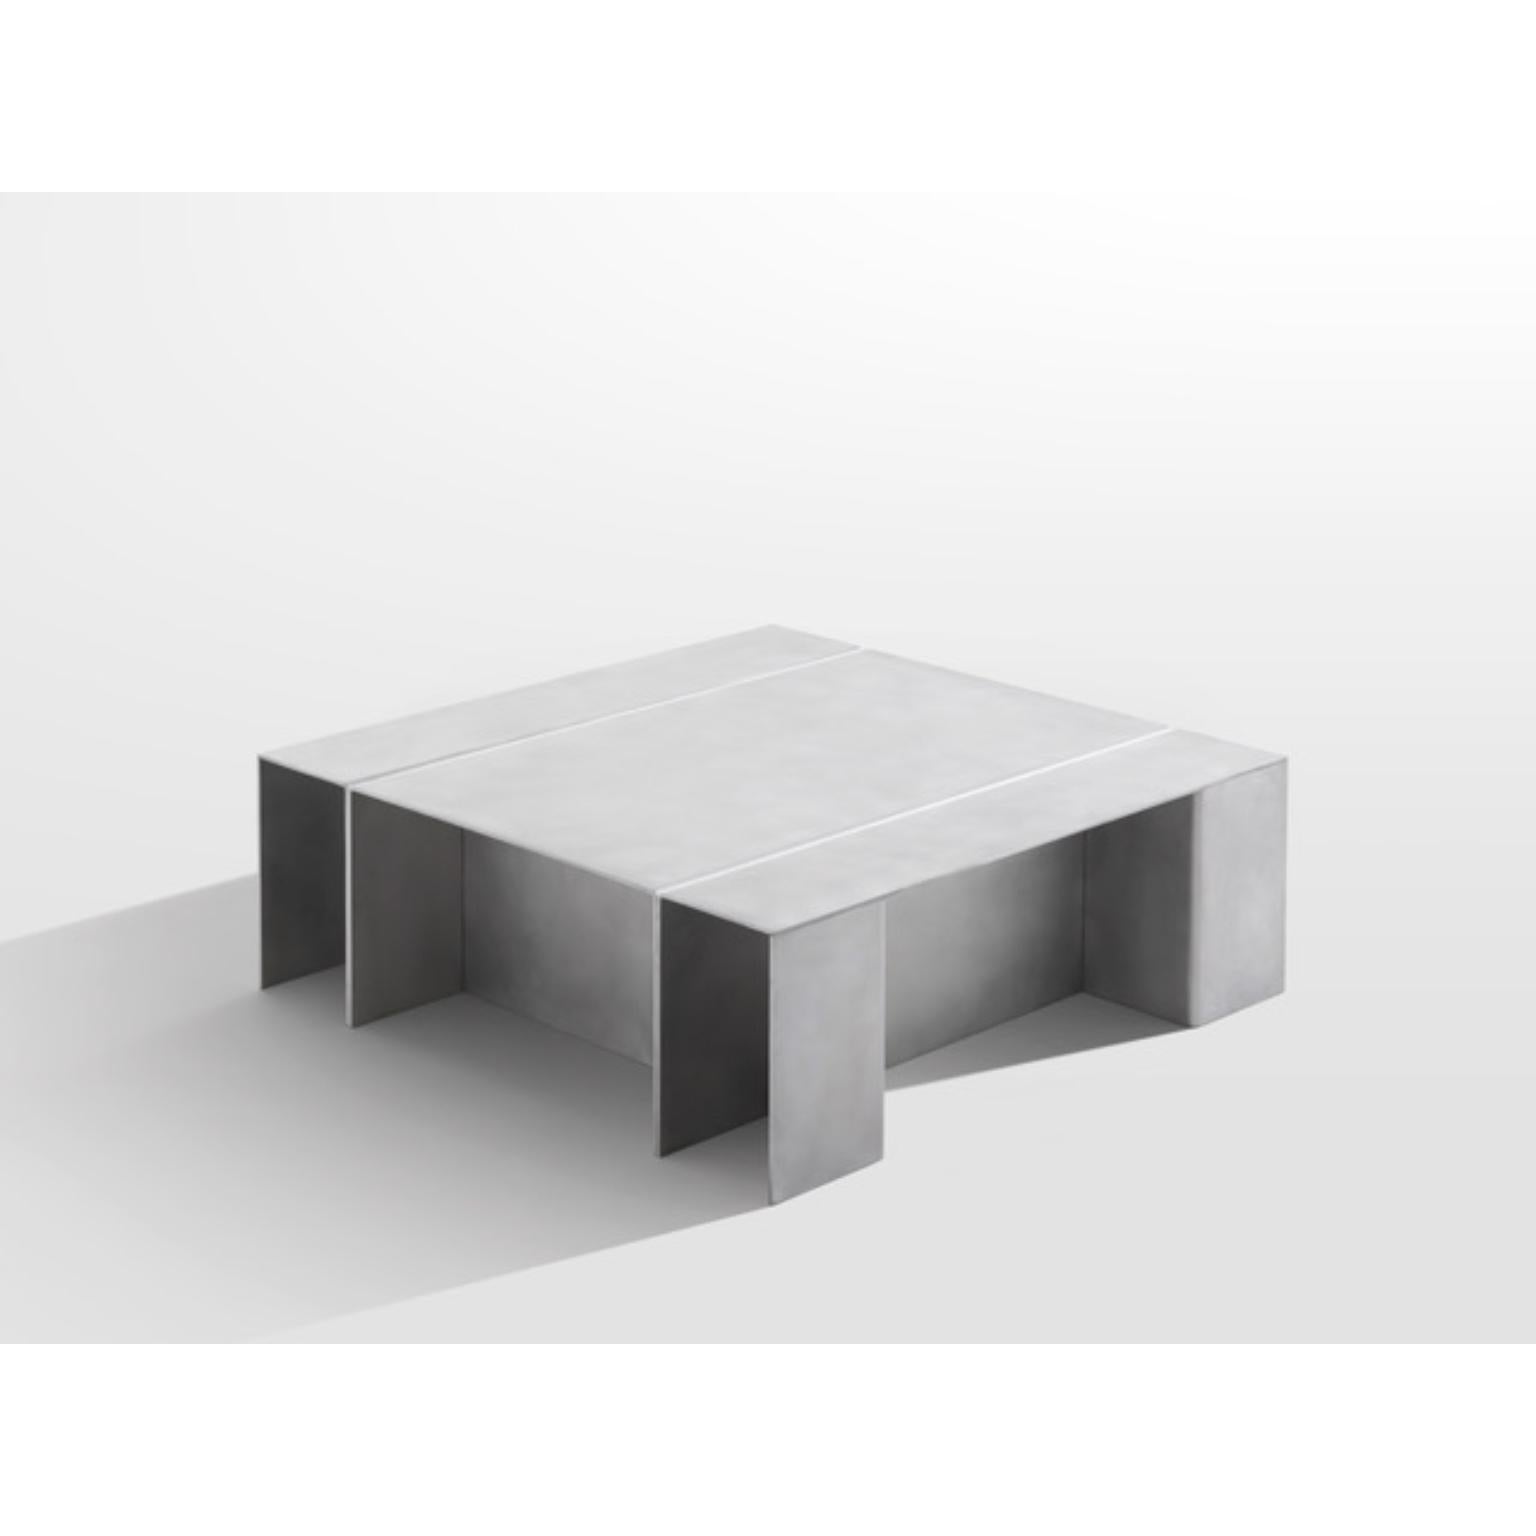 Aluminium Couchtisch von Paul Coenen
Abmessungen: T 100 x B 100 x H 35 cm
MATERIALIEN: Aluminium.

Paul Coenen verfolgt einen intuitiven und praktischen Ansatz, bei dem er seine Faszination für MATERIAL und moderne sowie traditionelle